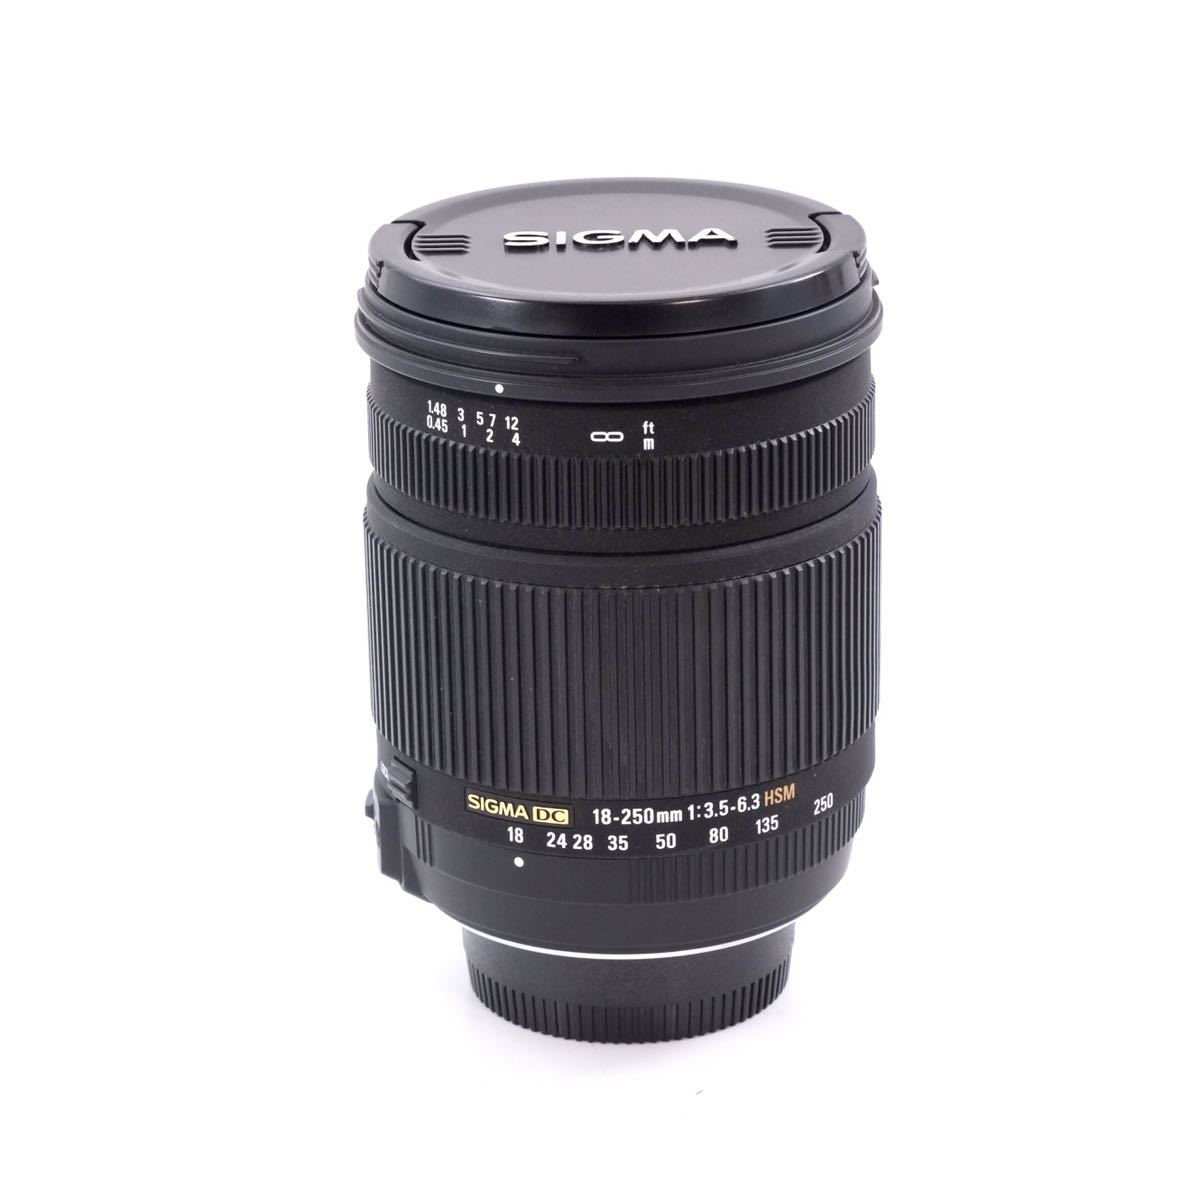 SIGMA シグマ ZOOM 18-250mm F3.5-6.3 DC OS HSM (Nikon ニコンマウント用)レンズ